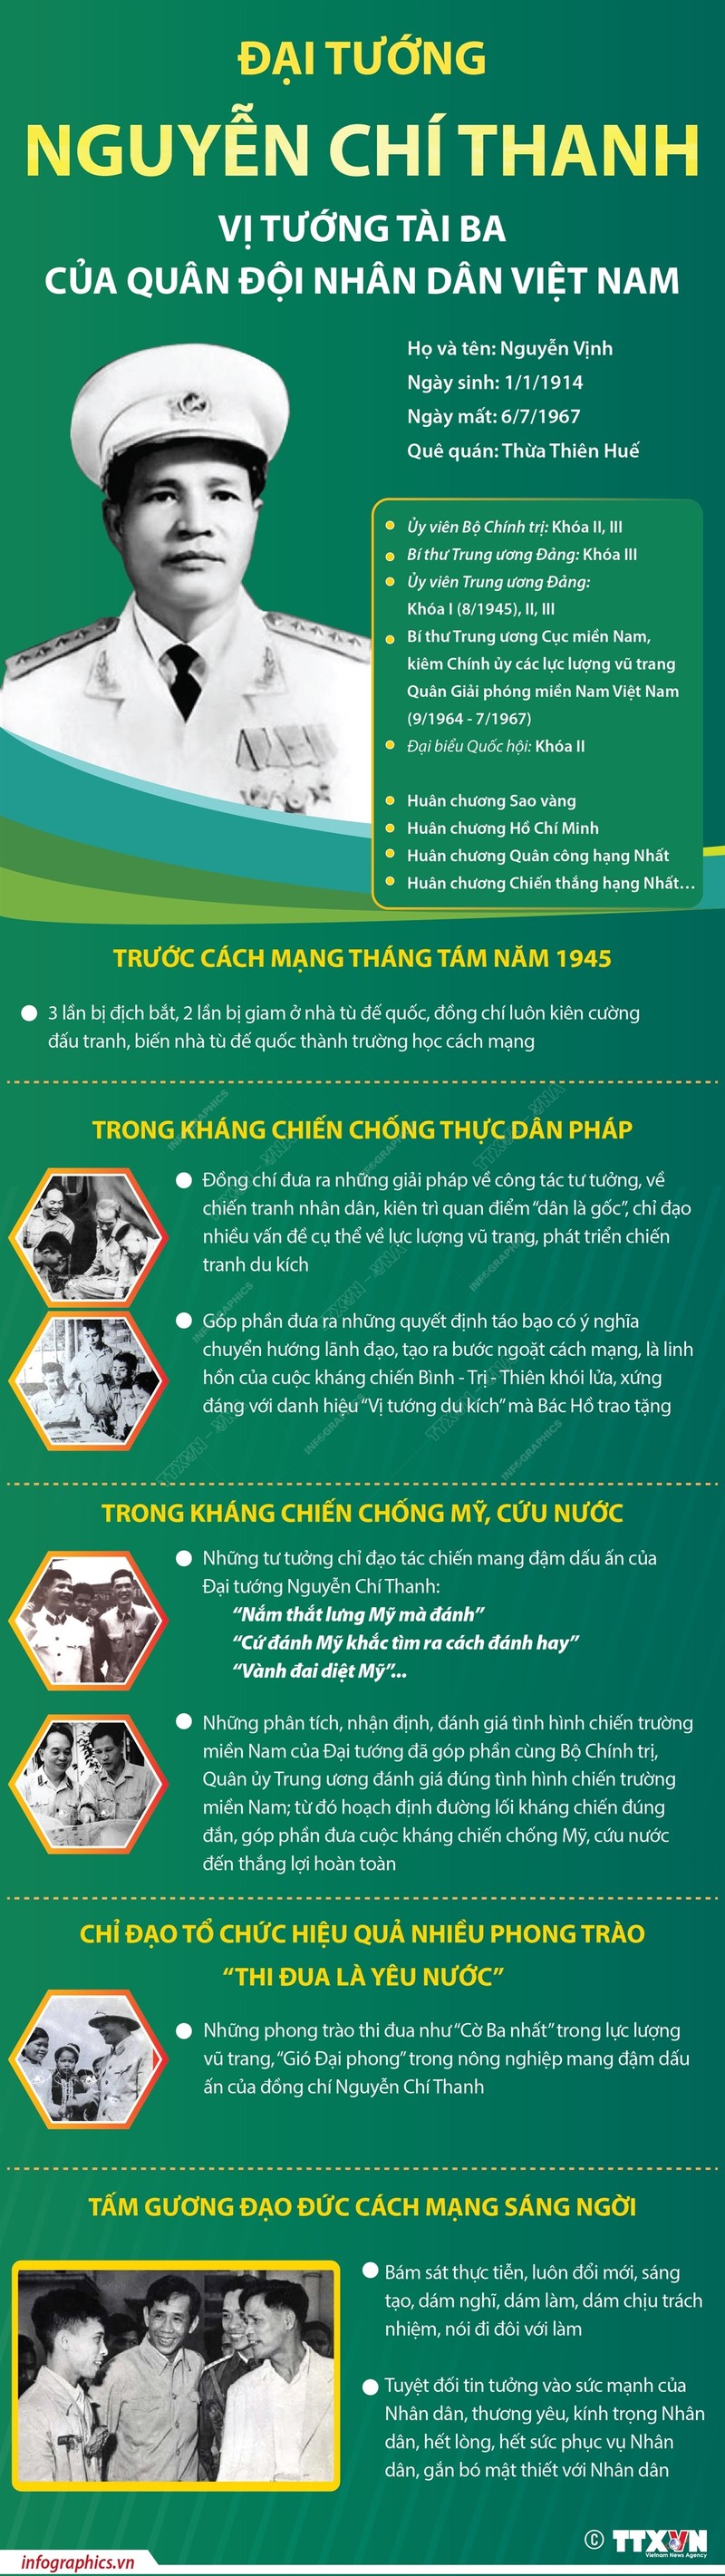 Dai tuong Nguyen Chi Thanh: Vi tuong tai ba cua Quan doi nhan dan Viet Nam